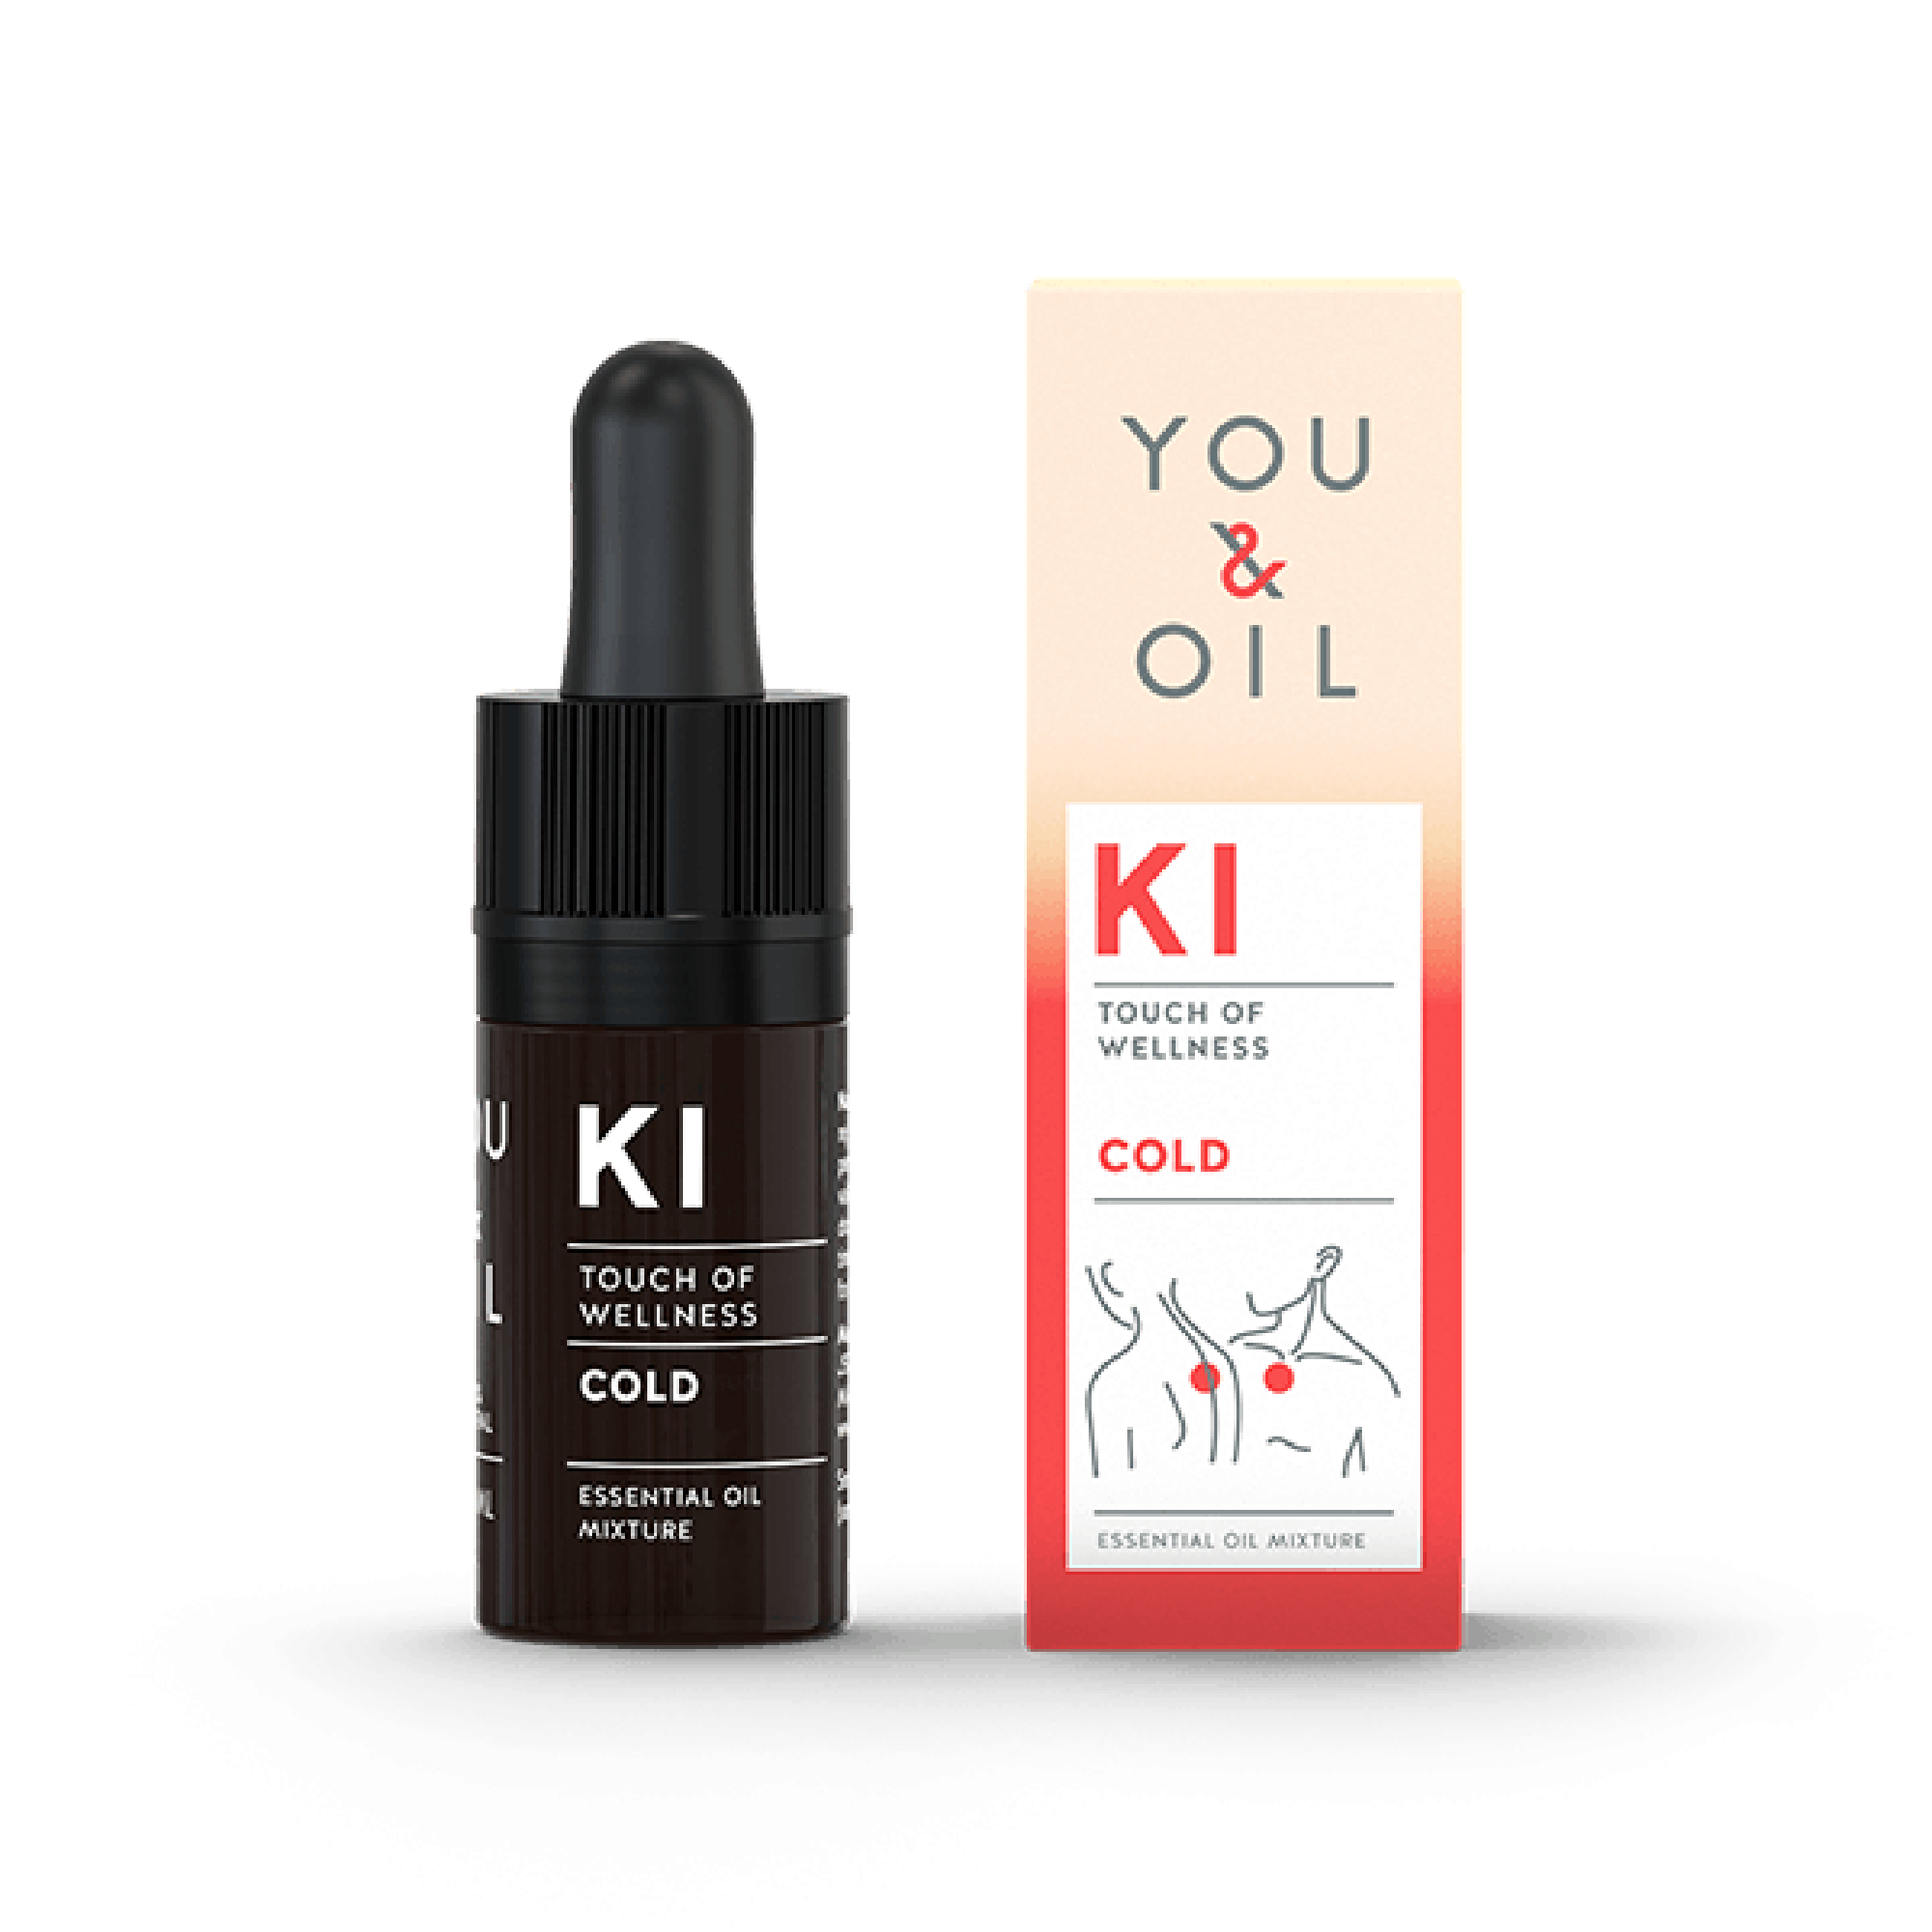 You & Oil KI Bioaktivní směs - Nachlazení (5 ml) You & Oil